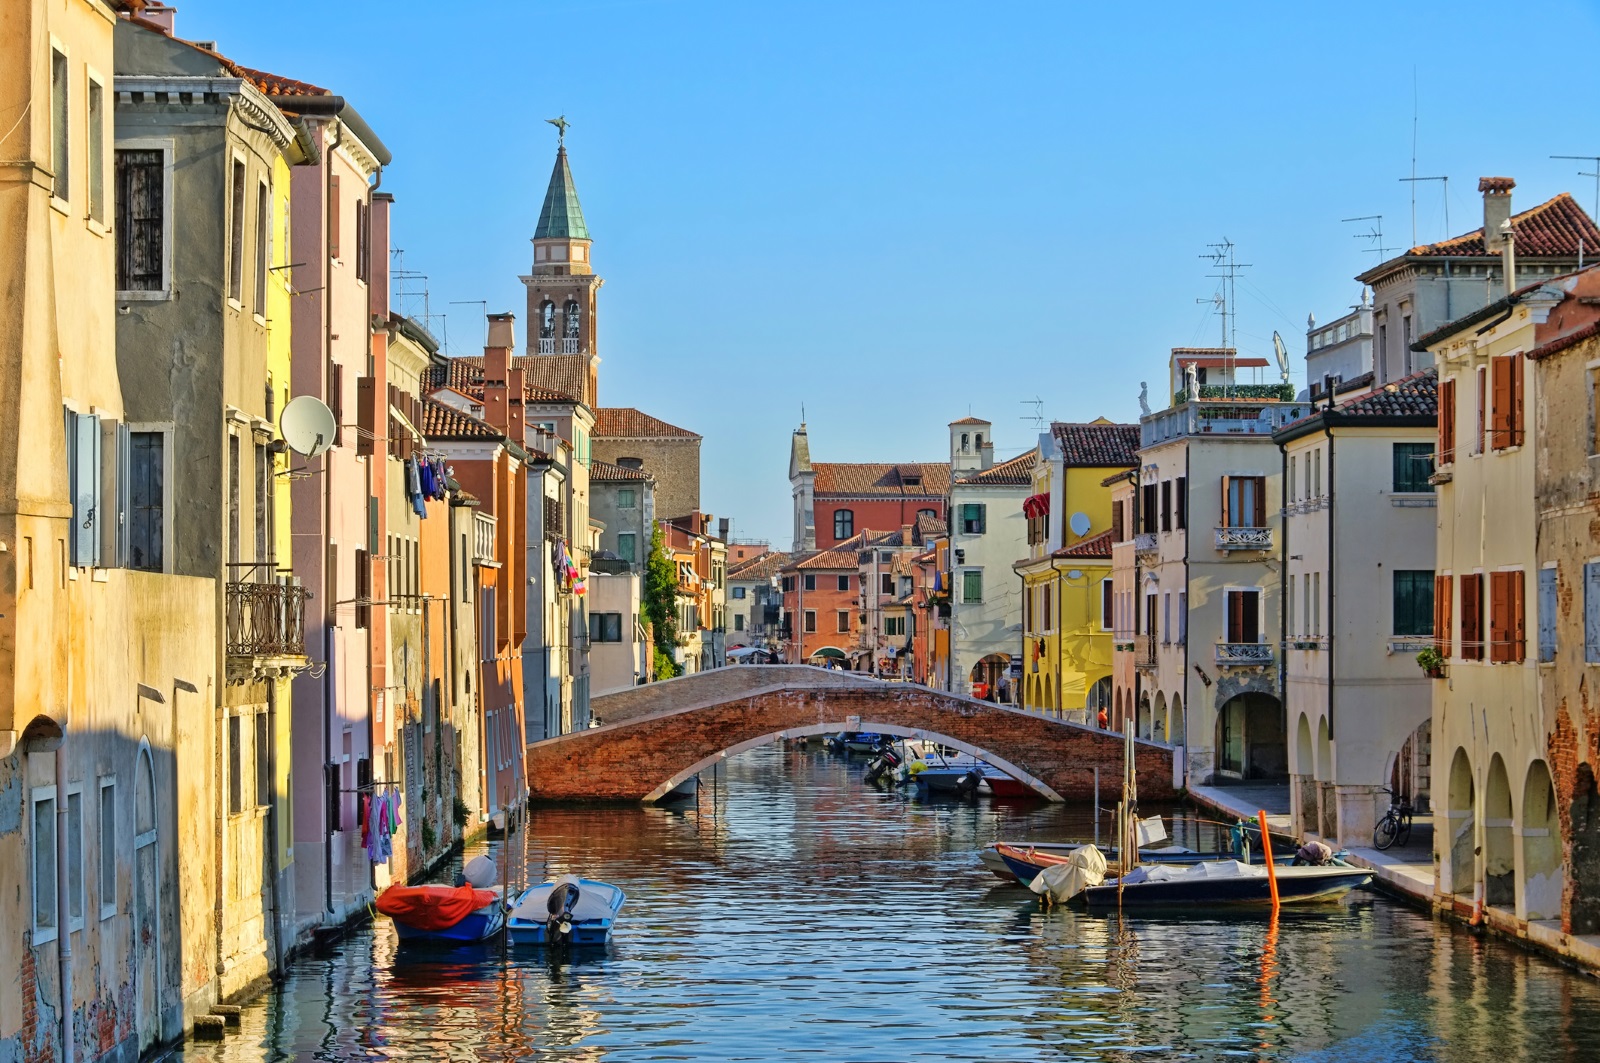 <p>Киоджа вместо Венеция. Венеция е приказно красива, но прелива от туристи. Годишно я посещават близо 30 милиона души. Ако искате да избегнете тълпите от туристи, посетете Киоджа. С неговите романтични мостове, тесни улички и пъстри фасади това живописно рибарско градче предлага неповторима италианска атмосфера. При това без да е така претъпкано, както Венеция.</p>